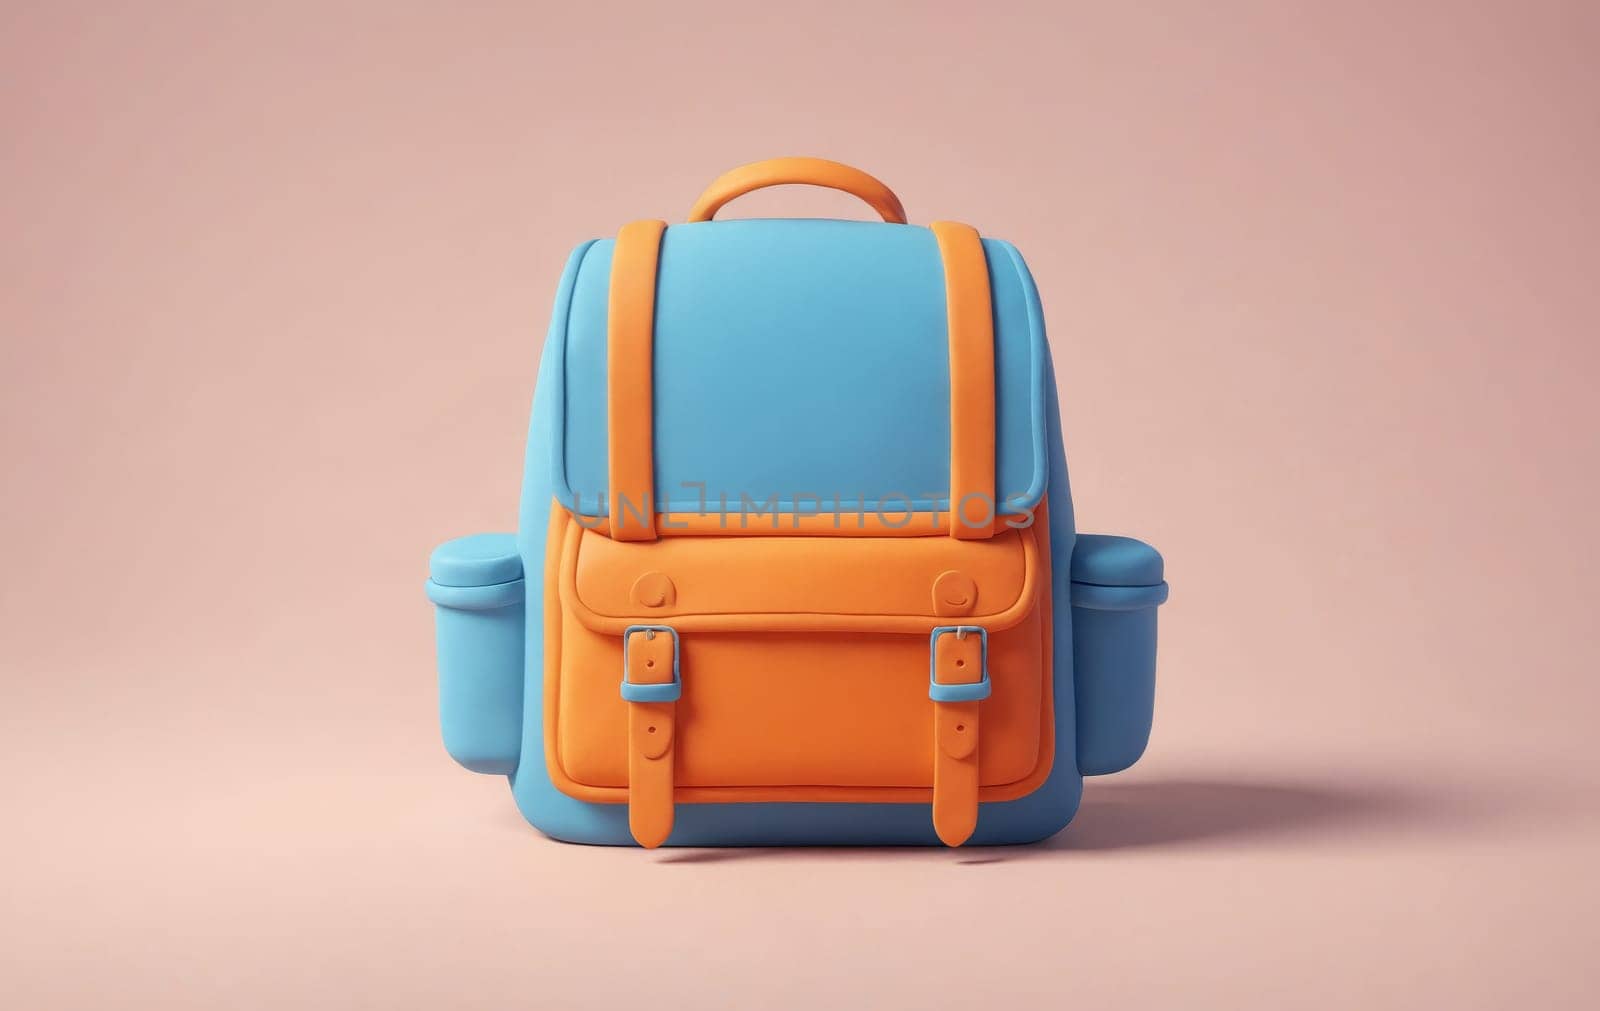 Fashion-forward backpack in striking cyan and orange hues.